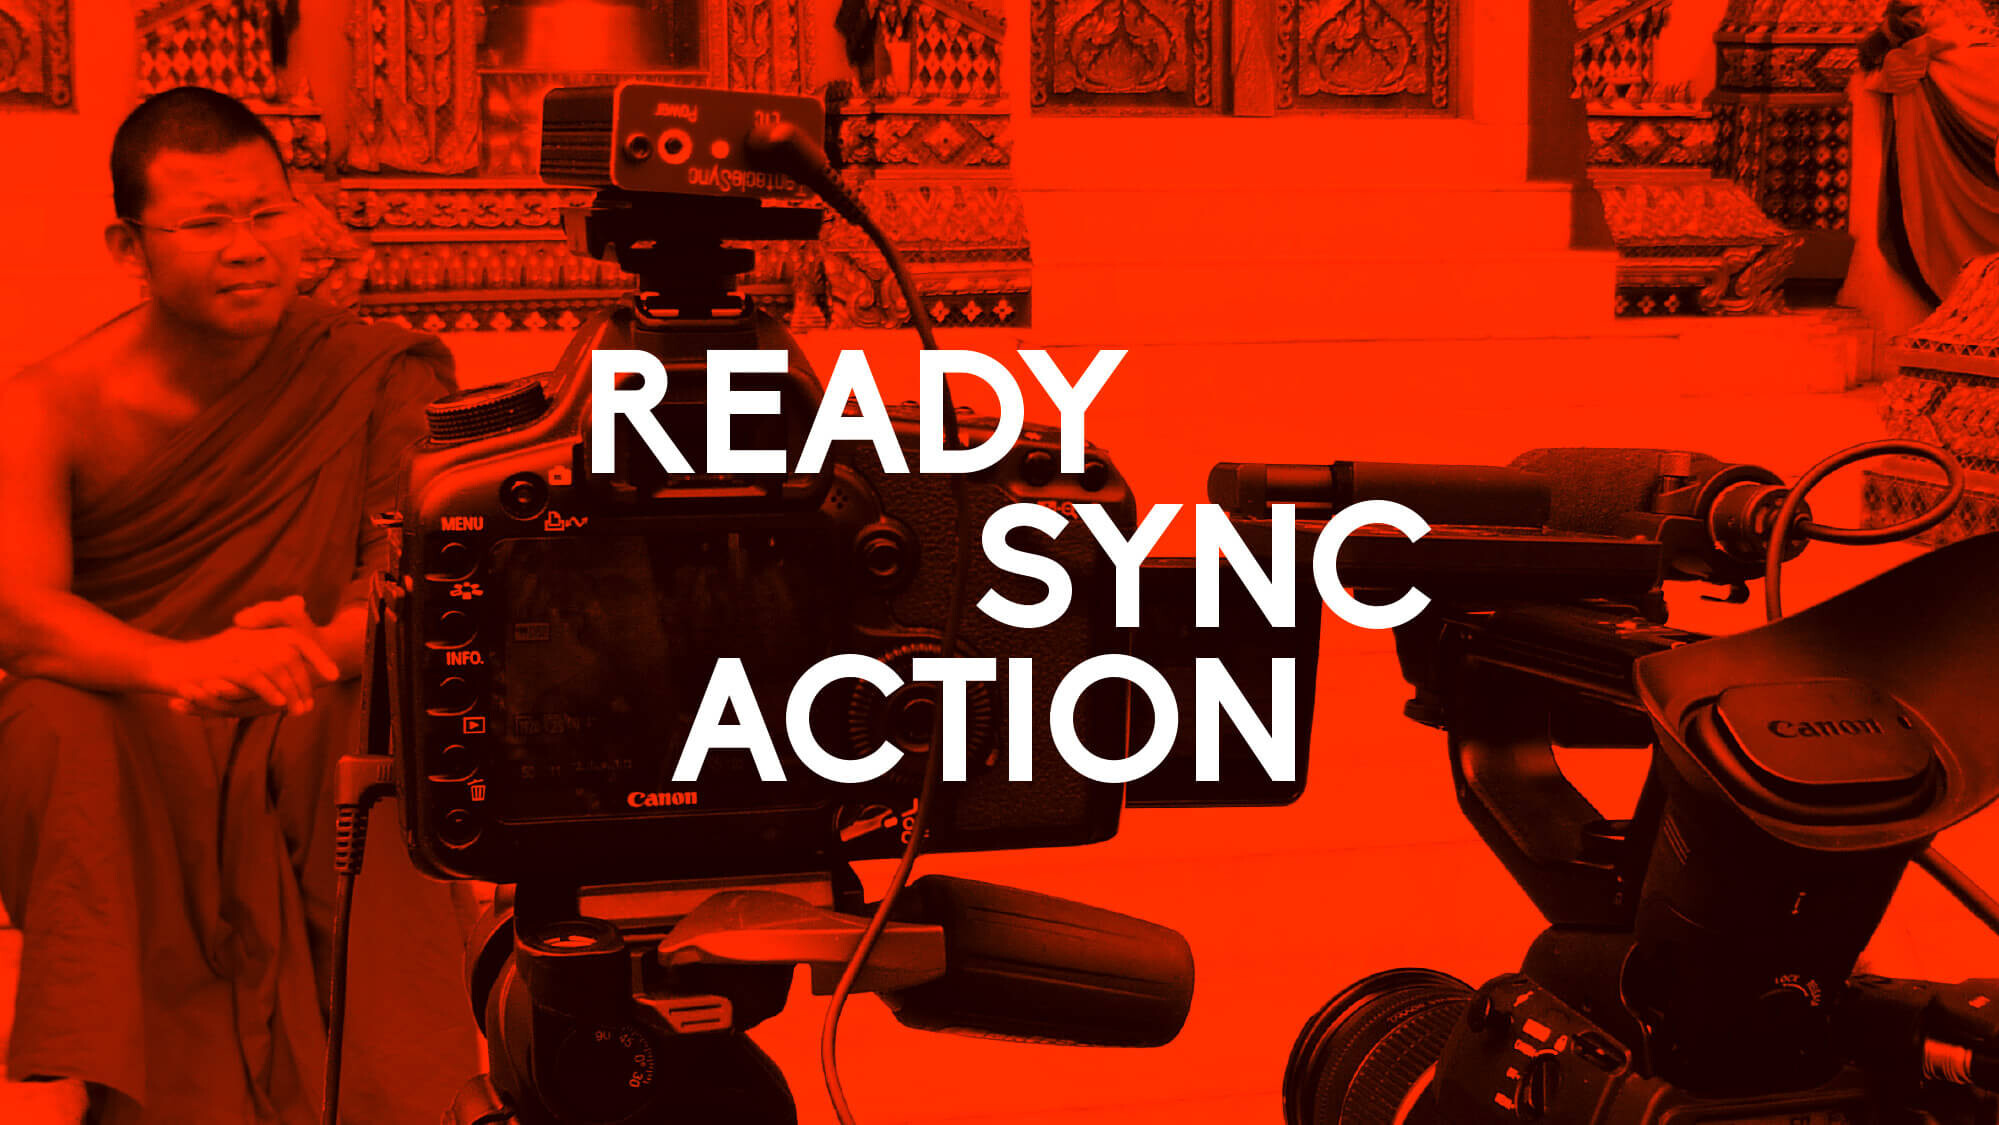 Ein Corporate Design-konform eingefärbtes Bild des Tentacle Sync-Geräts an einer DSLR mit der Beschriftung „Ready Sync Action“